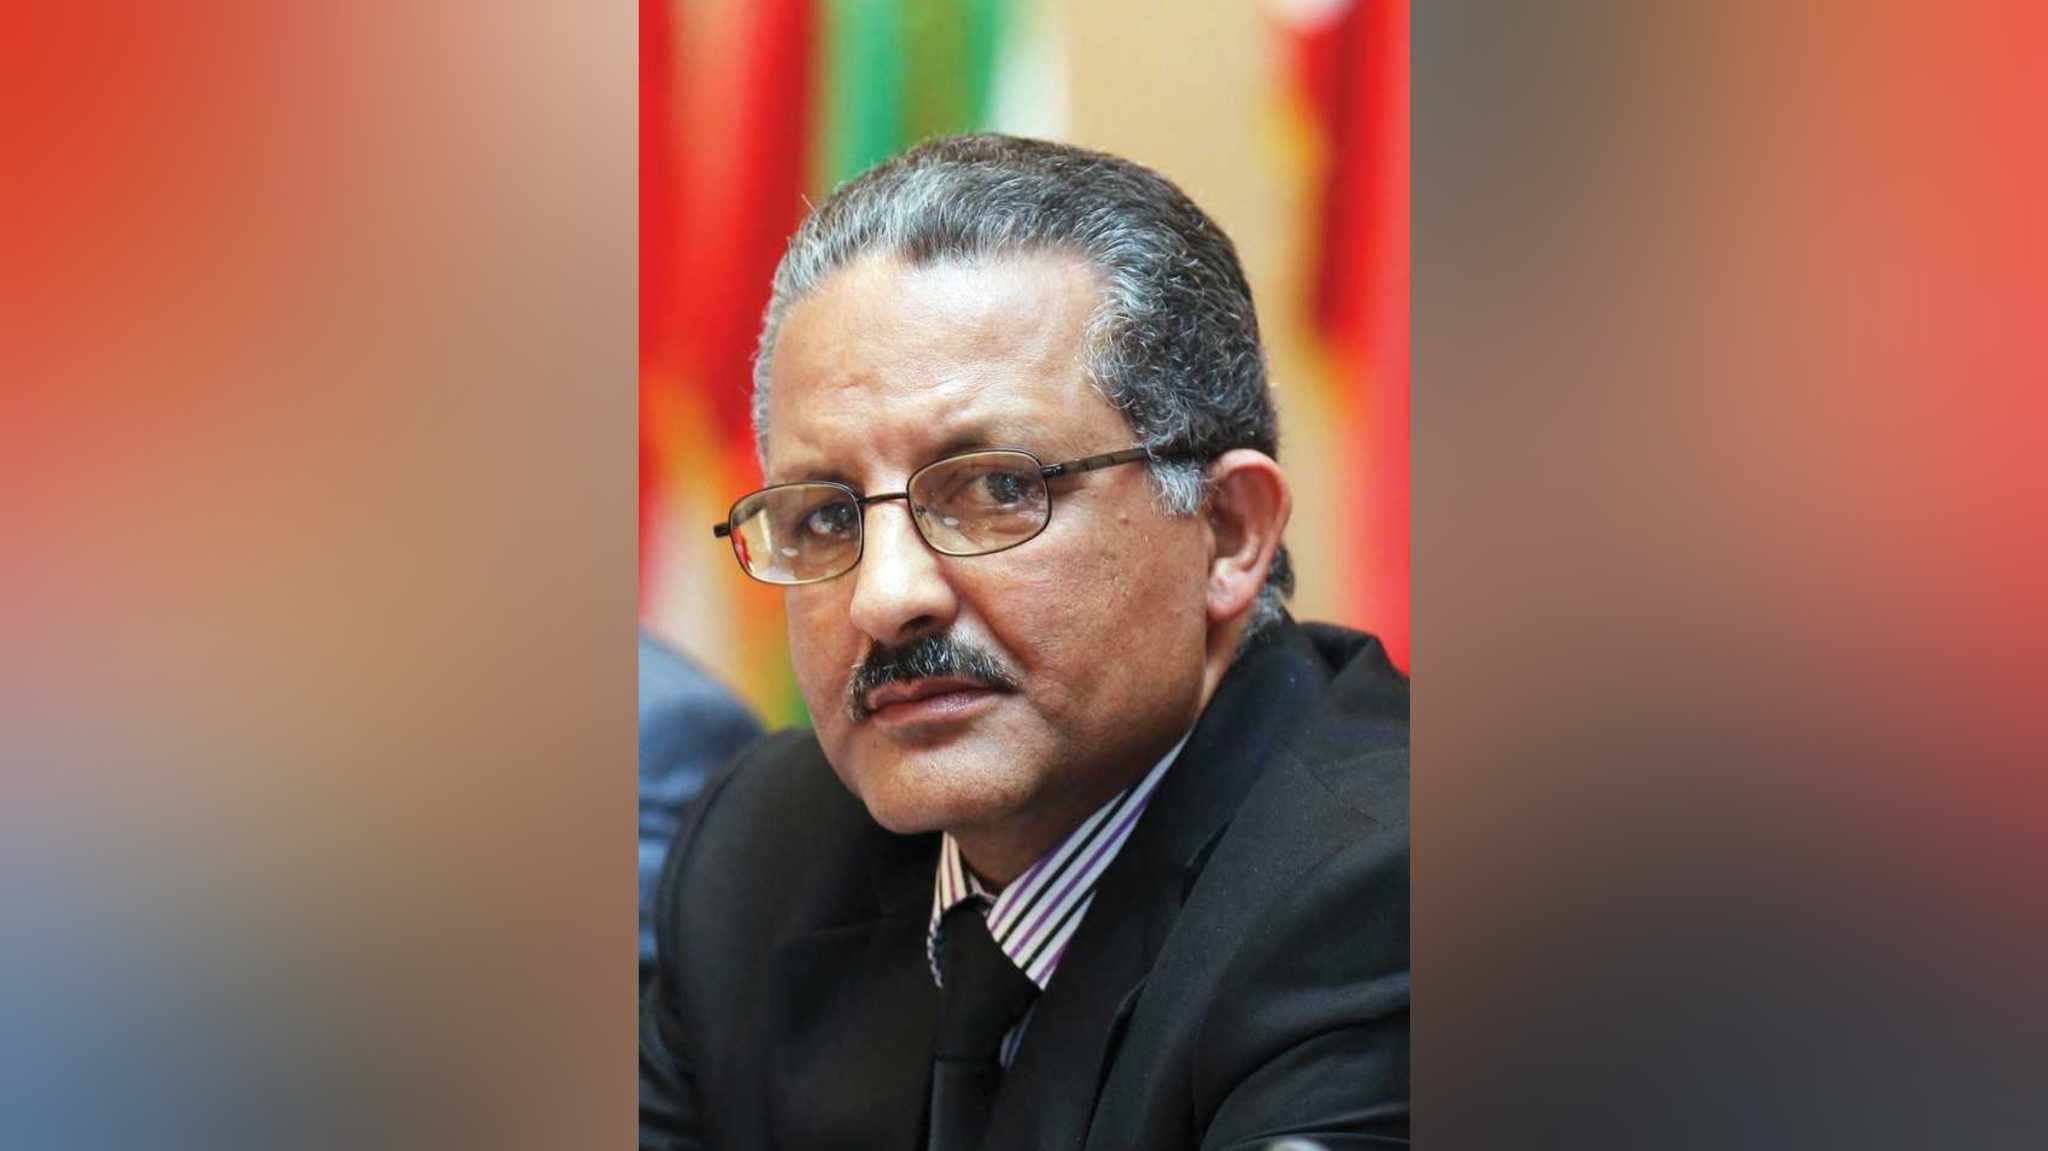 رئيس اتحاد الكتاب الجزائريين للصباح نيوز: معارض الكتب يجب أن تتبناها استراتيجية دولة لا استراتيجية أشخاص 